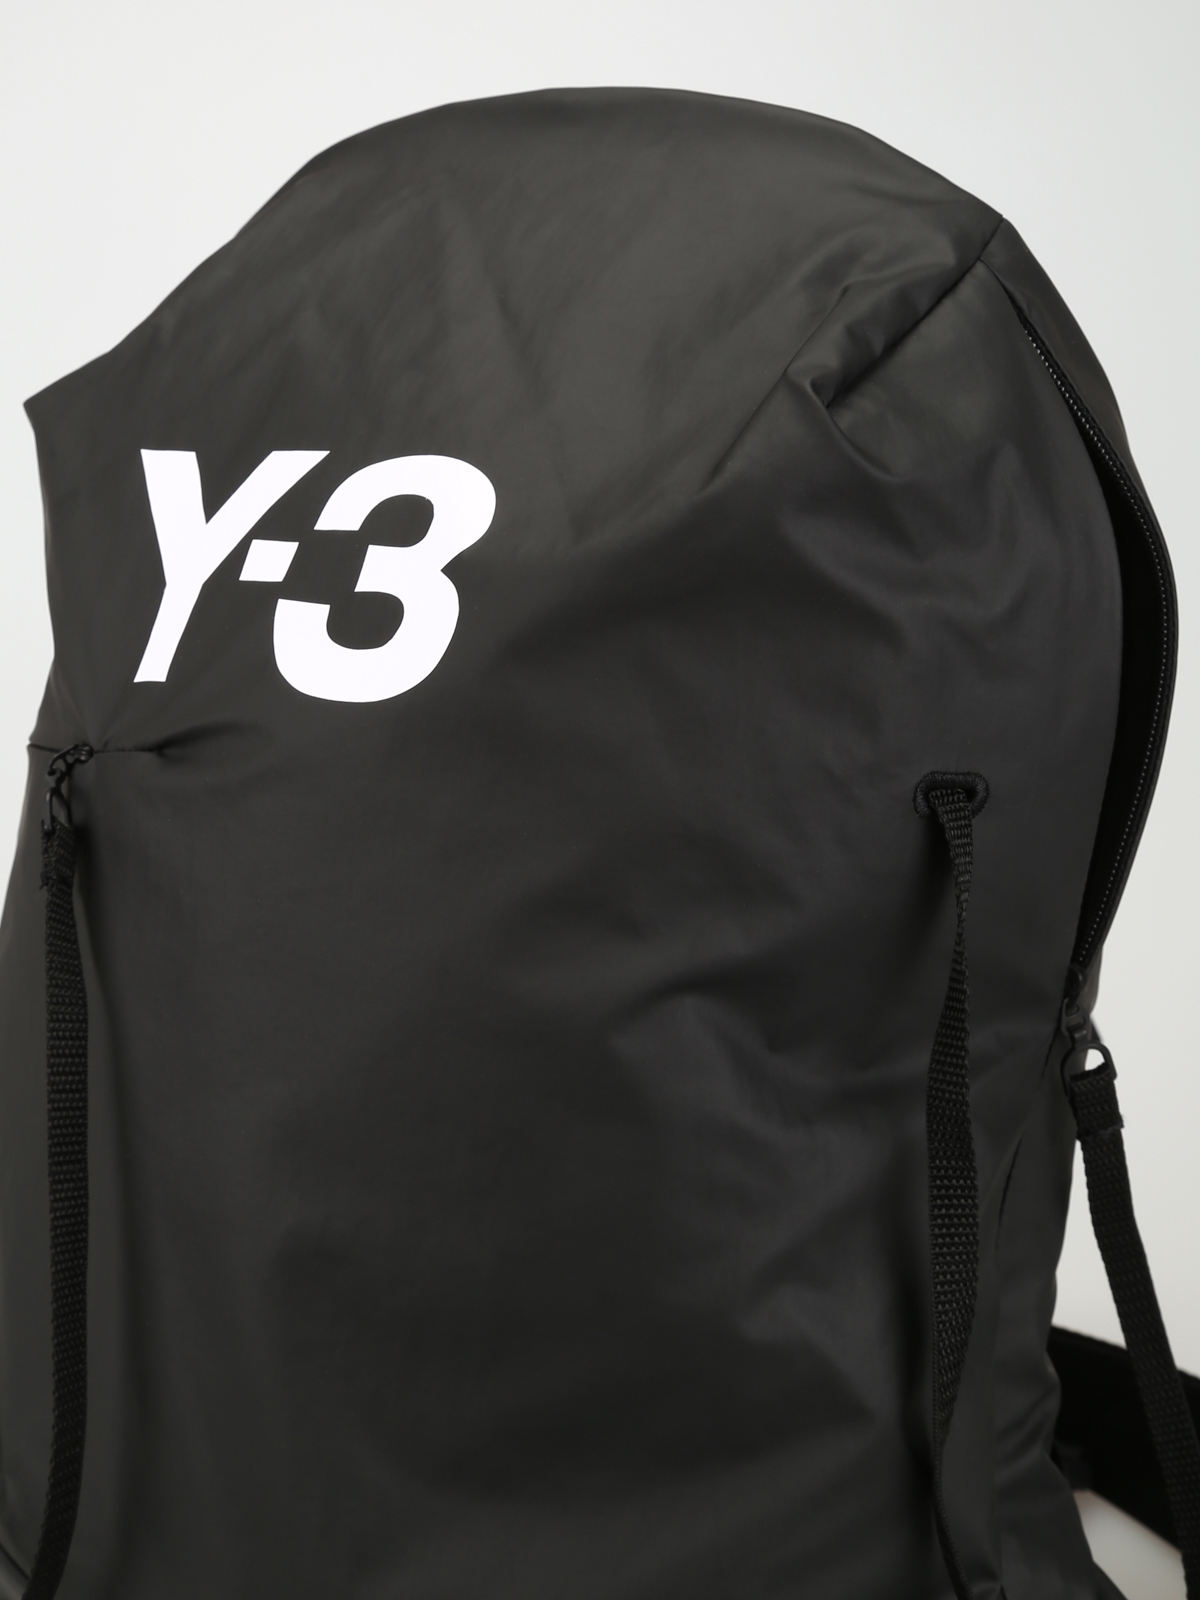 y3 shop online